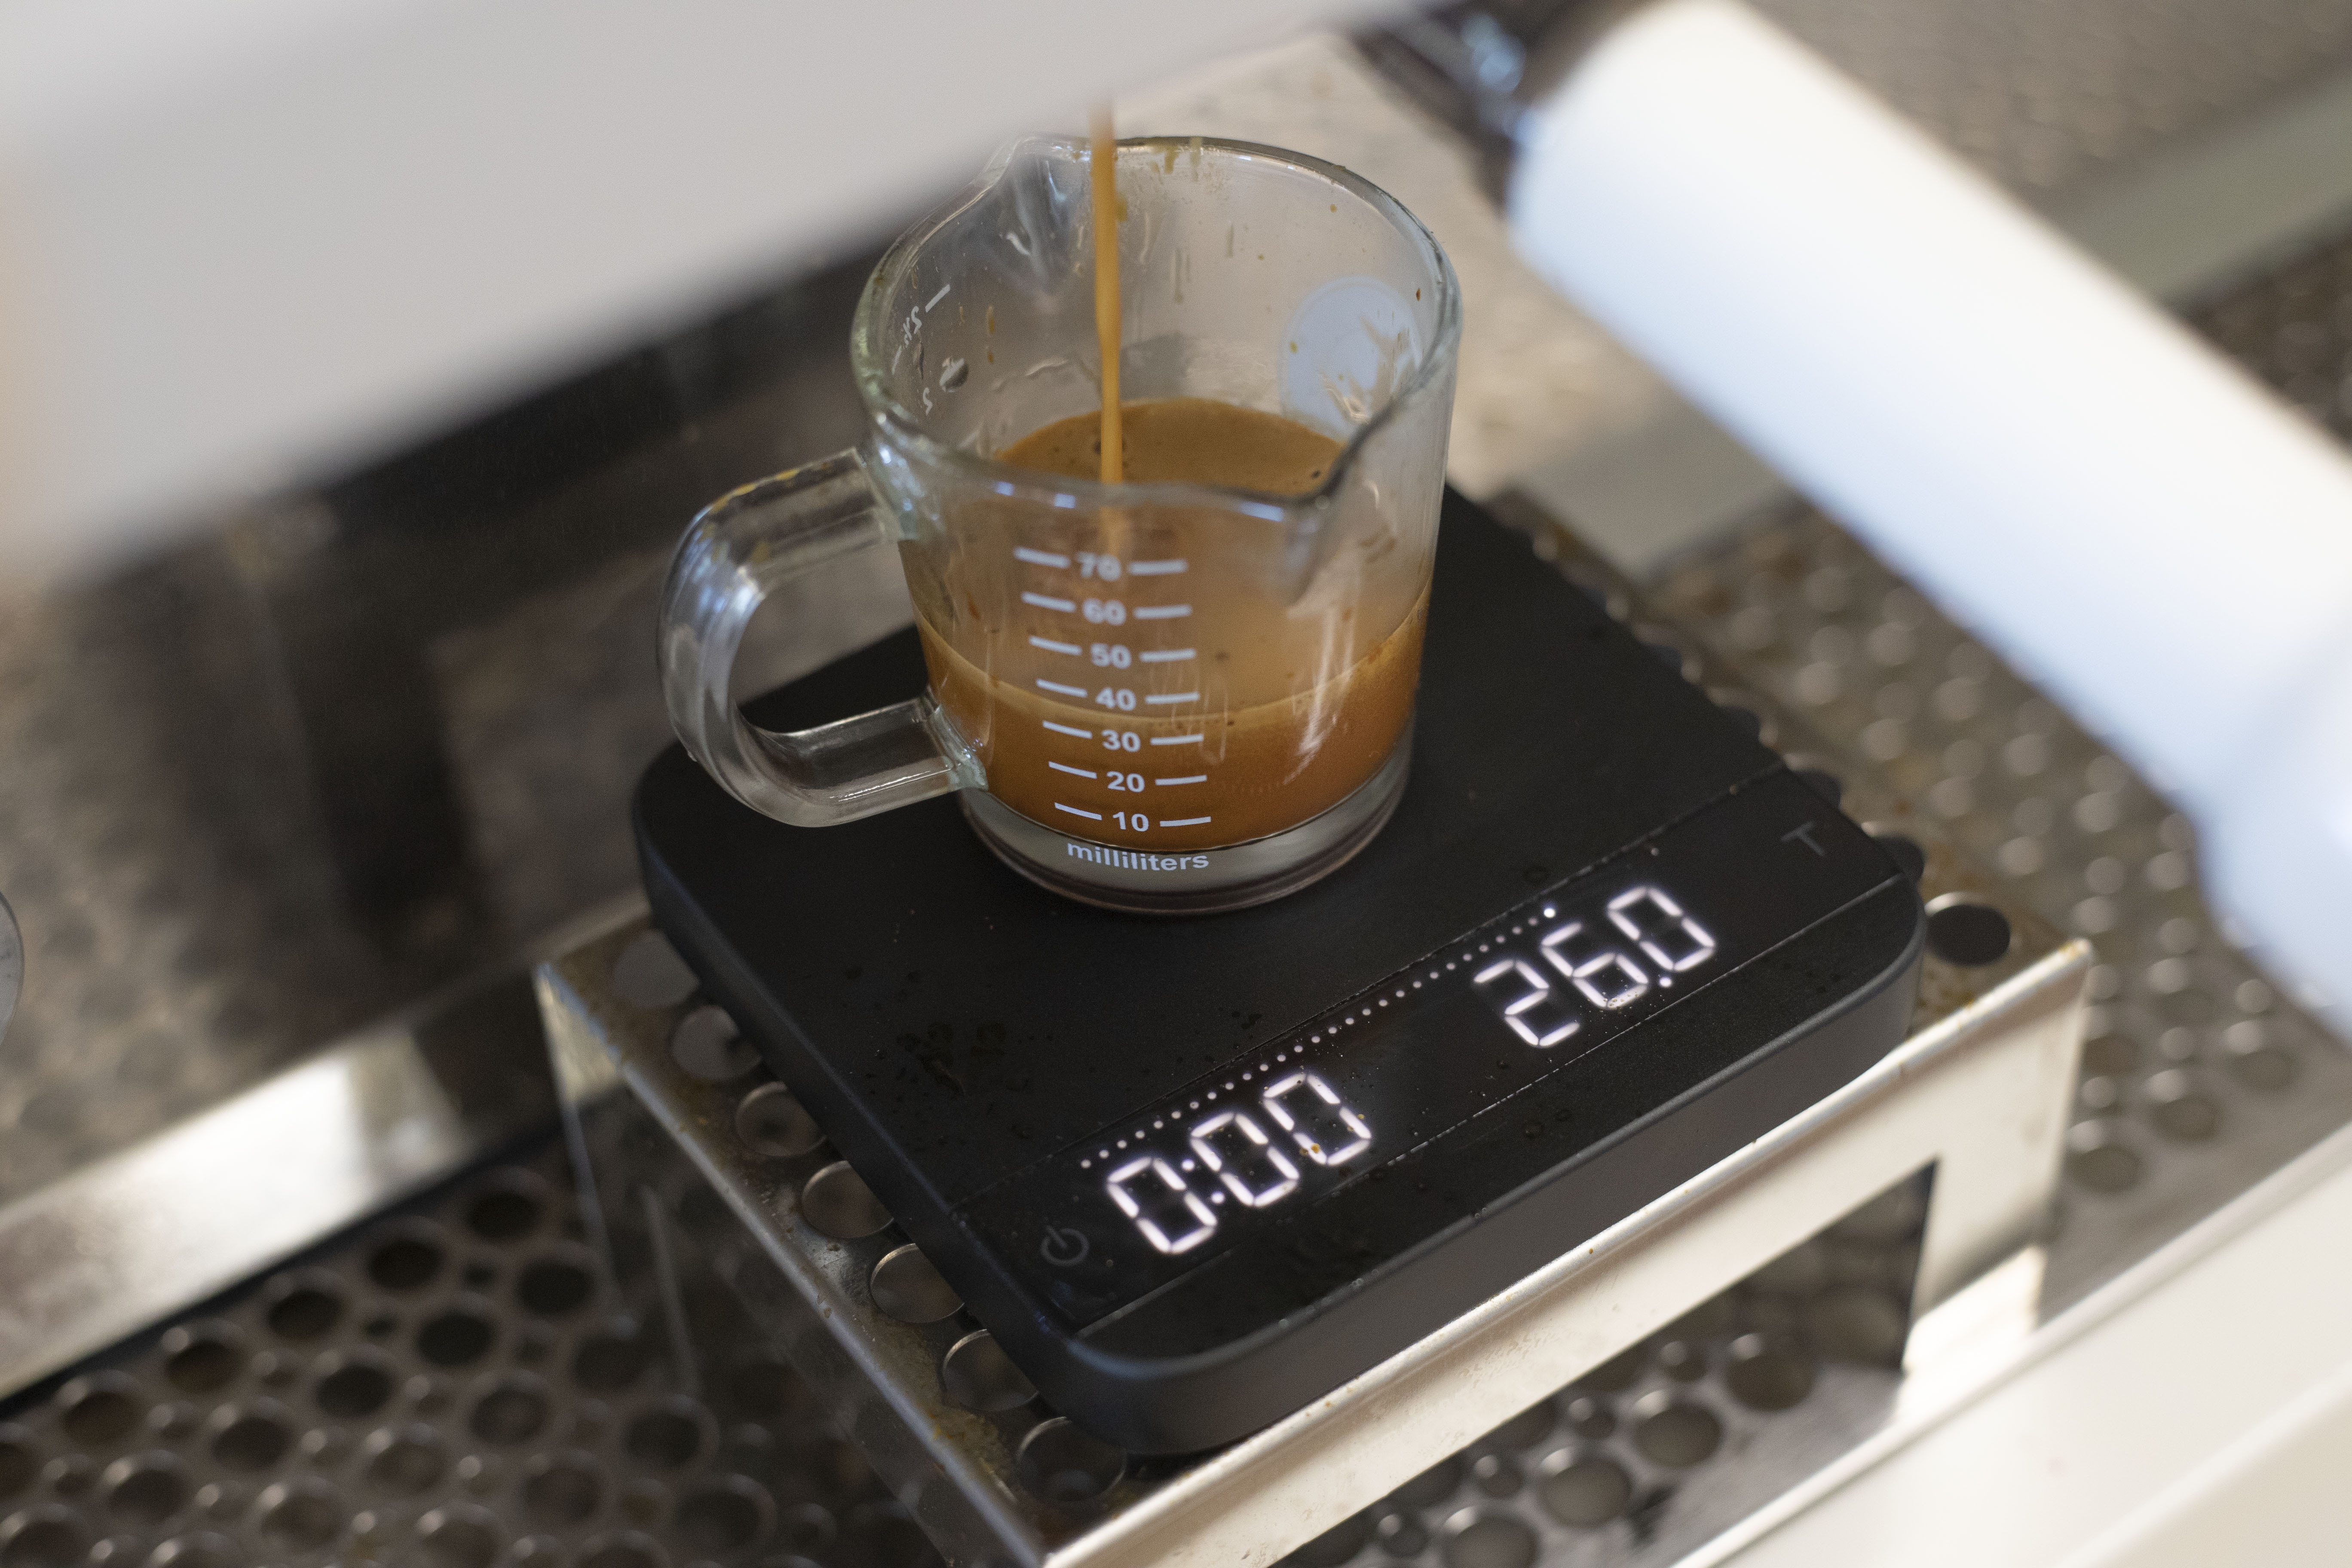 Acaia Lunar – High Precision Espresso Scale